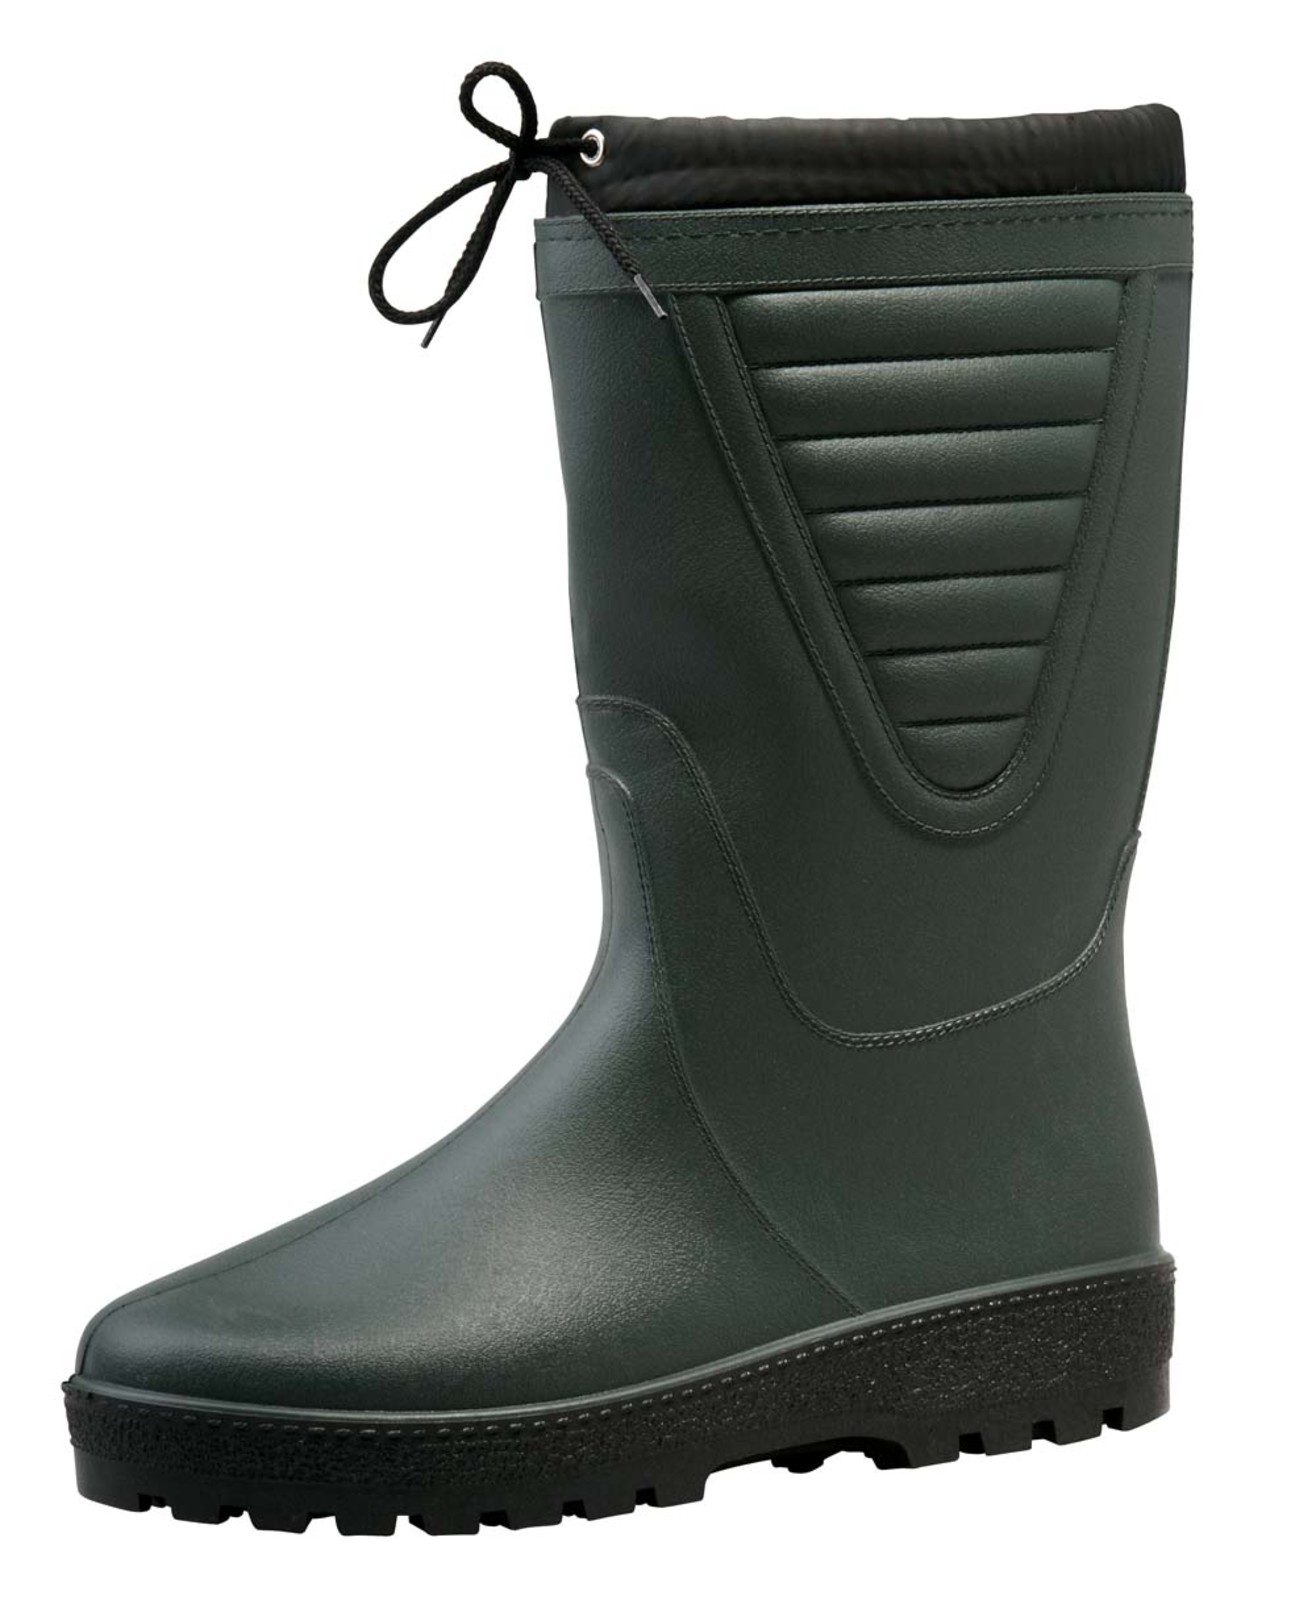 Zateplené čižmy Boots Polar - veľkosť: 44, farba: zelená